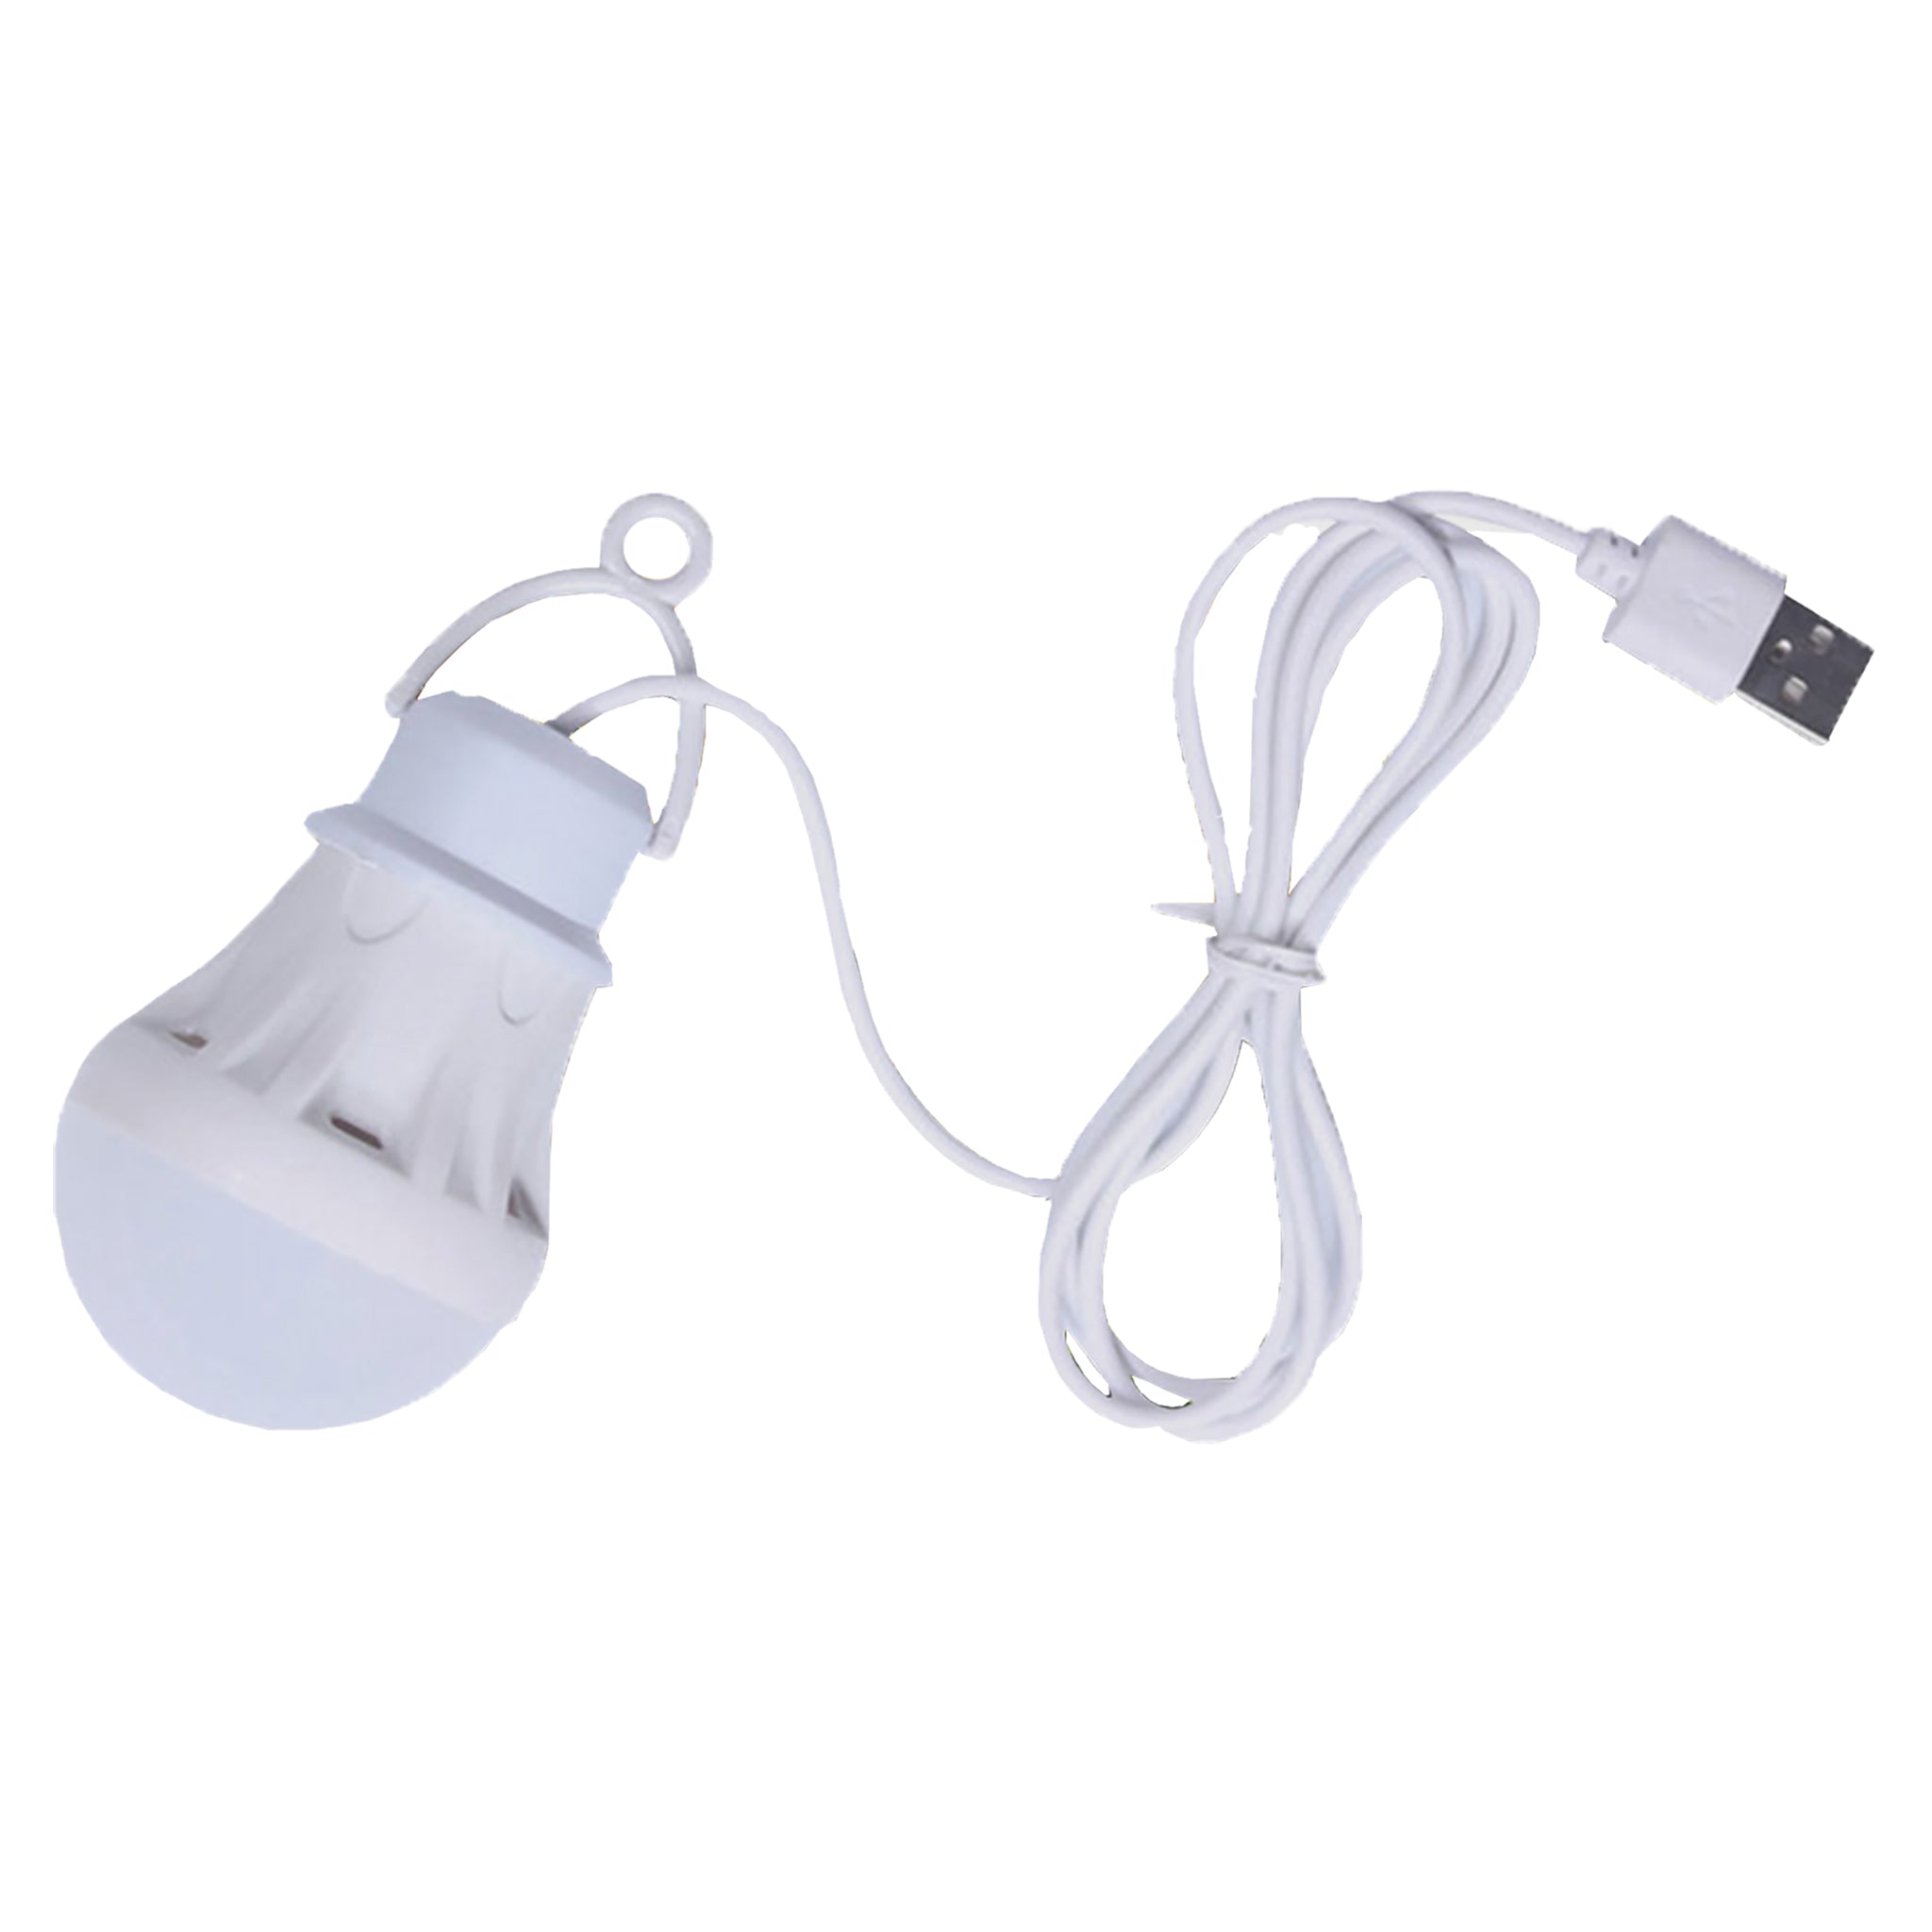 Corylus - Camping LED USB Lantern | Camping Lamp | Portable Lanterns